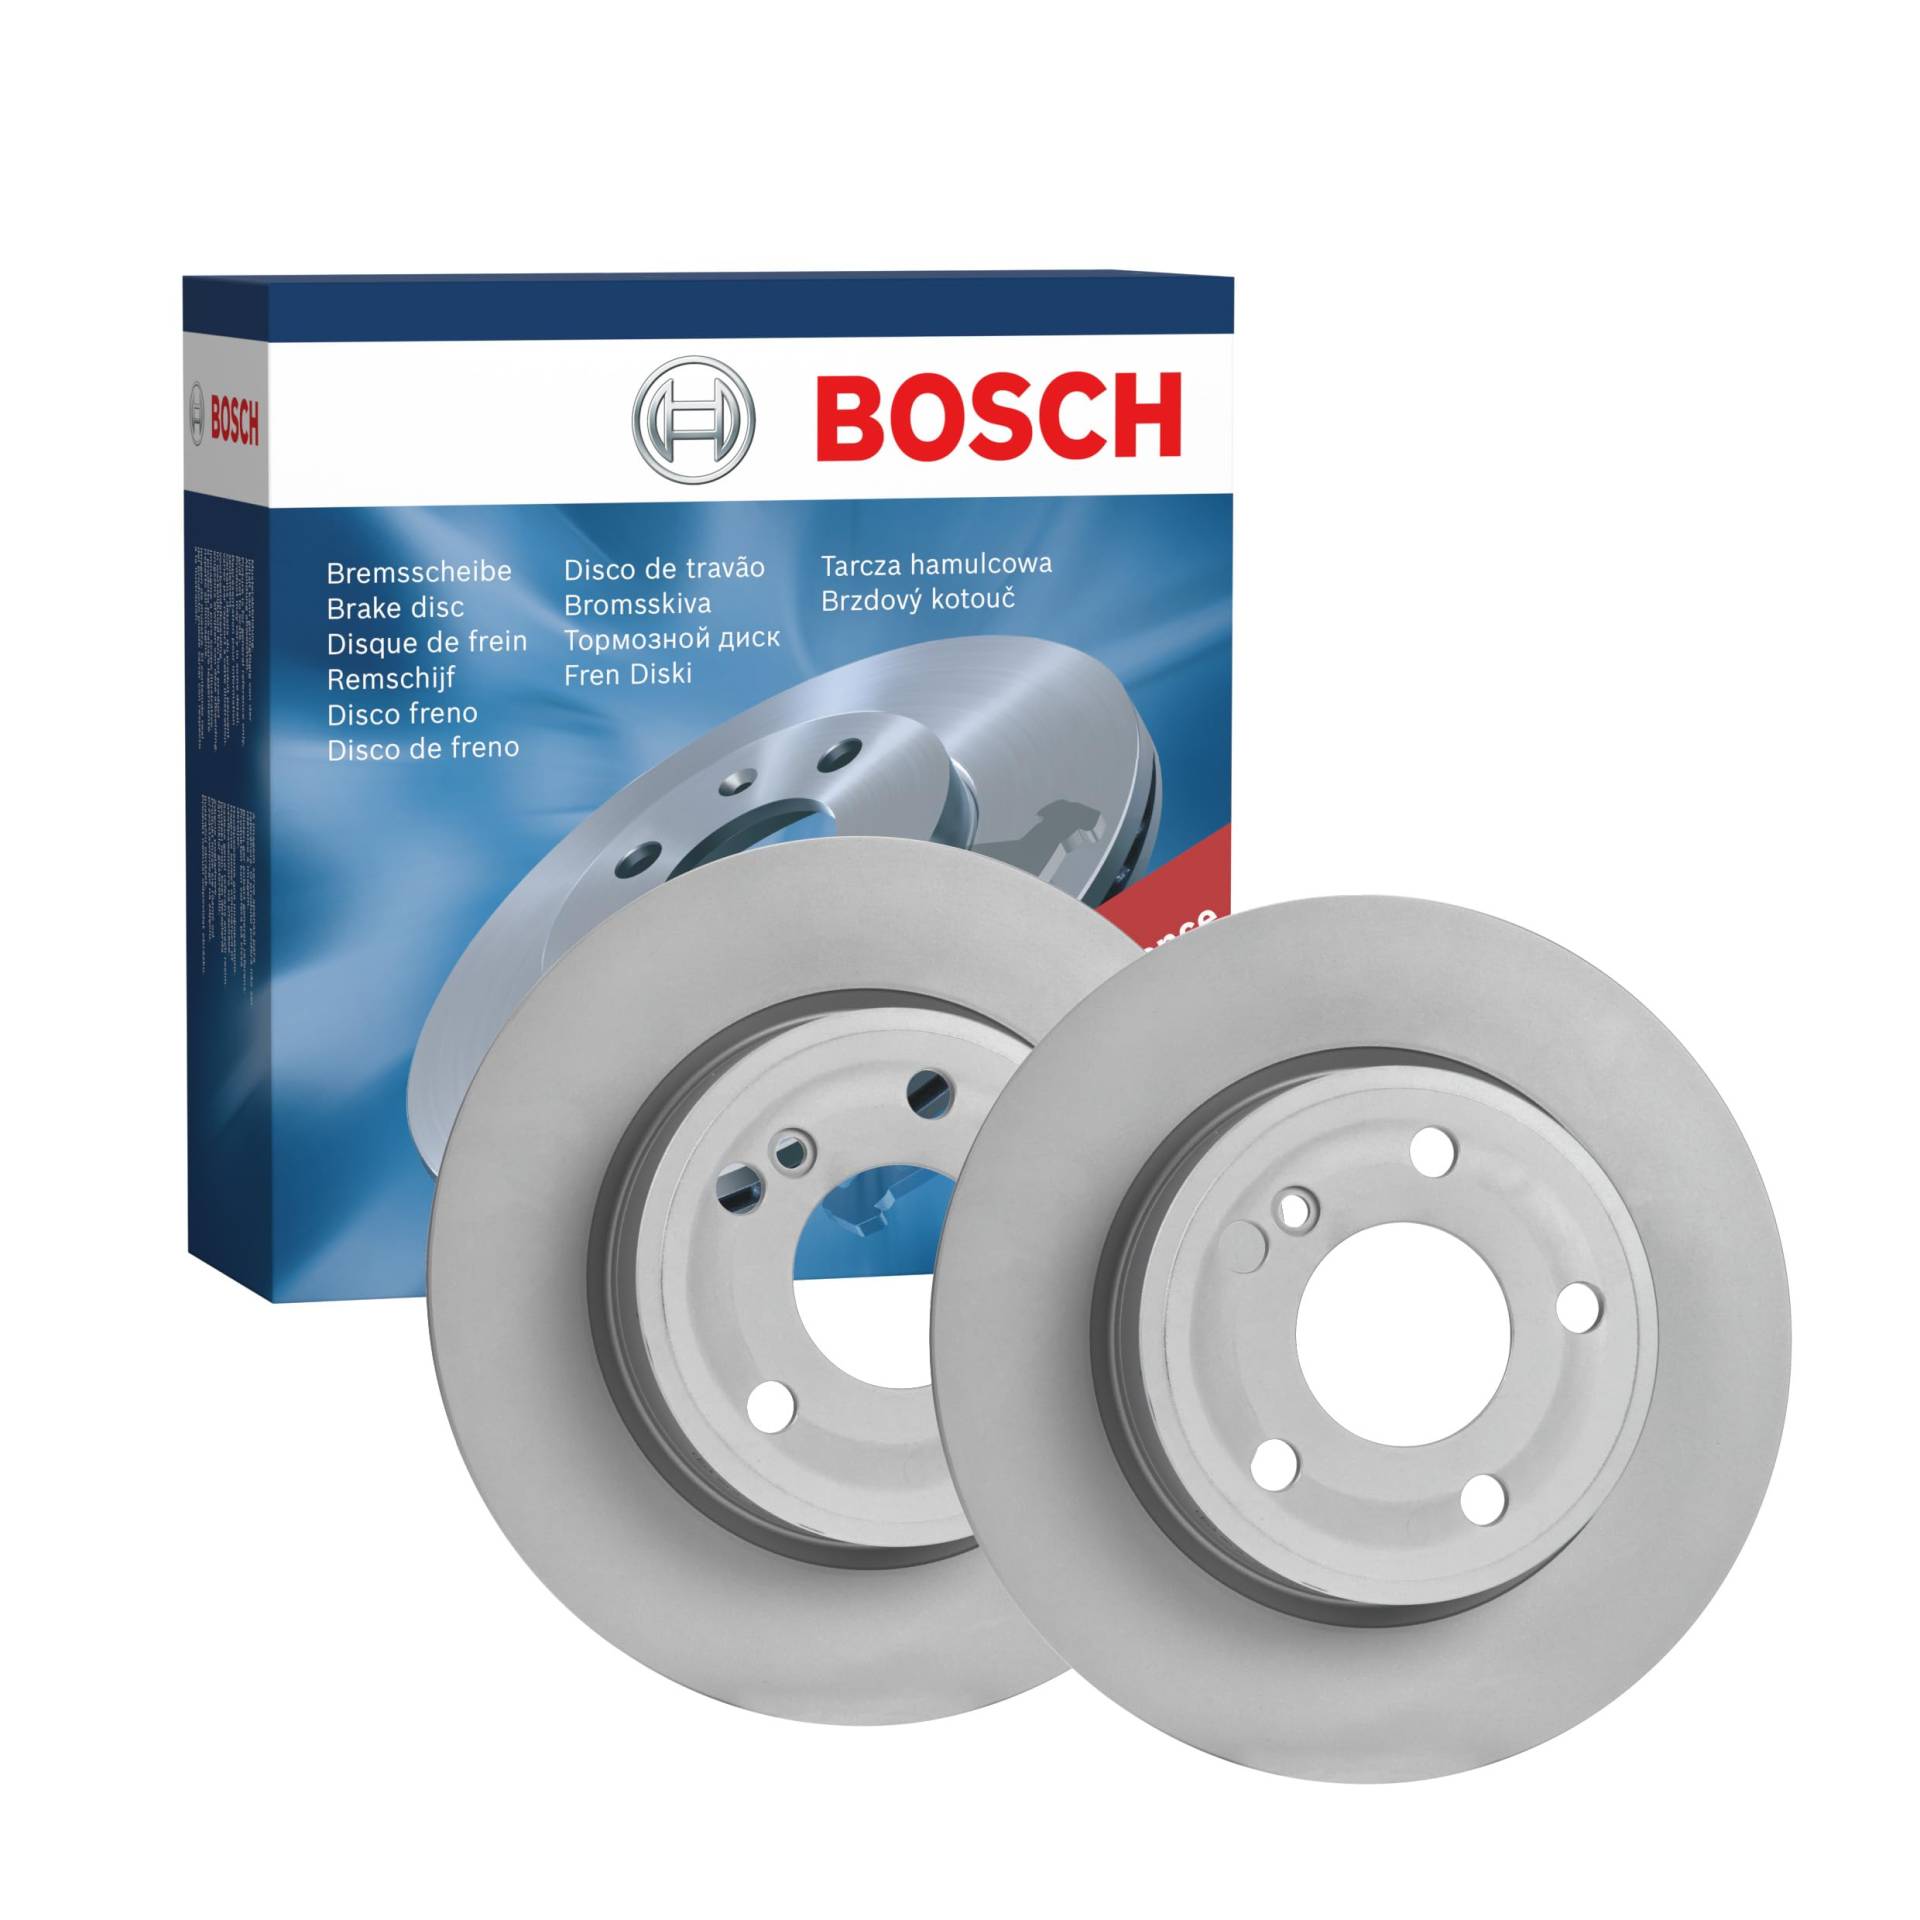 Bosch BD1690 Bremsscheiben - Hinterachse - ECE-R90 Zertifizierung - zwei Bremsscheiben pro Set von Bosch Automotive